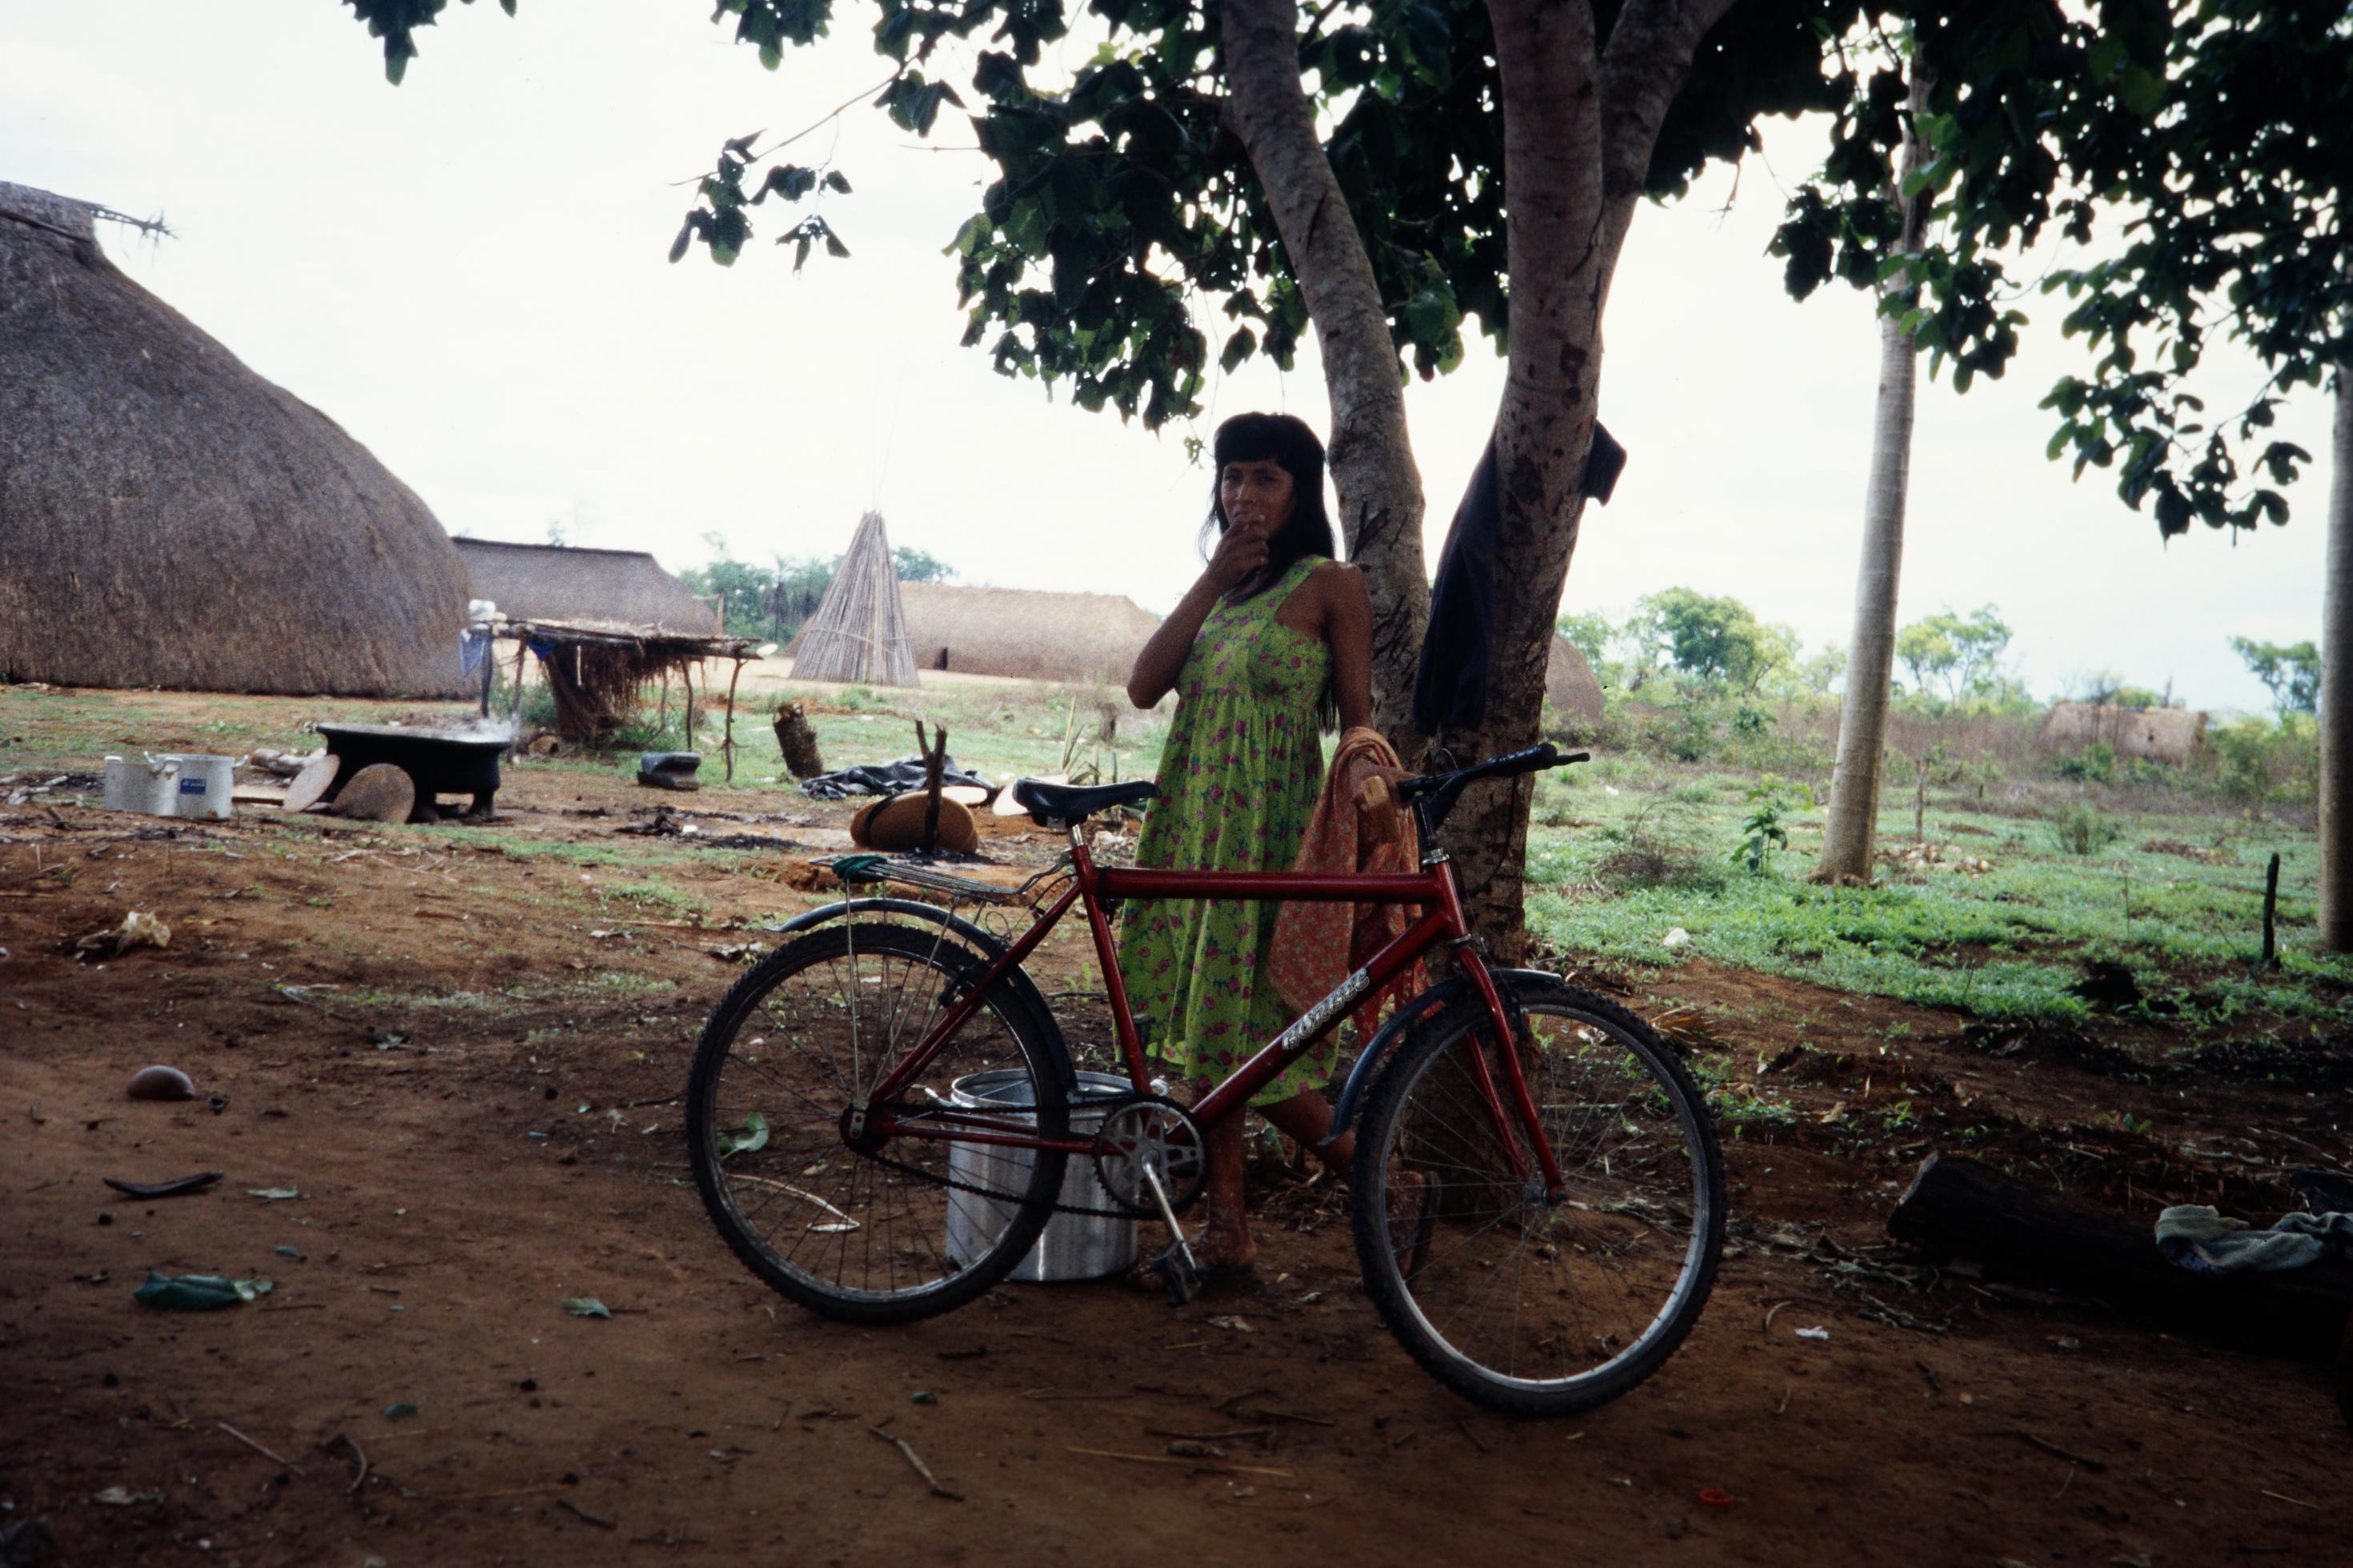 Eine indigene Frau in Brasilien mit einem Metallbehälter und einem Fahrrad im Schatten unter einem Baum.